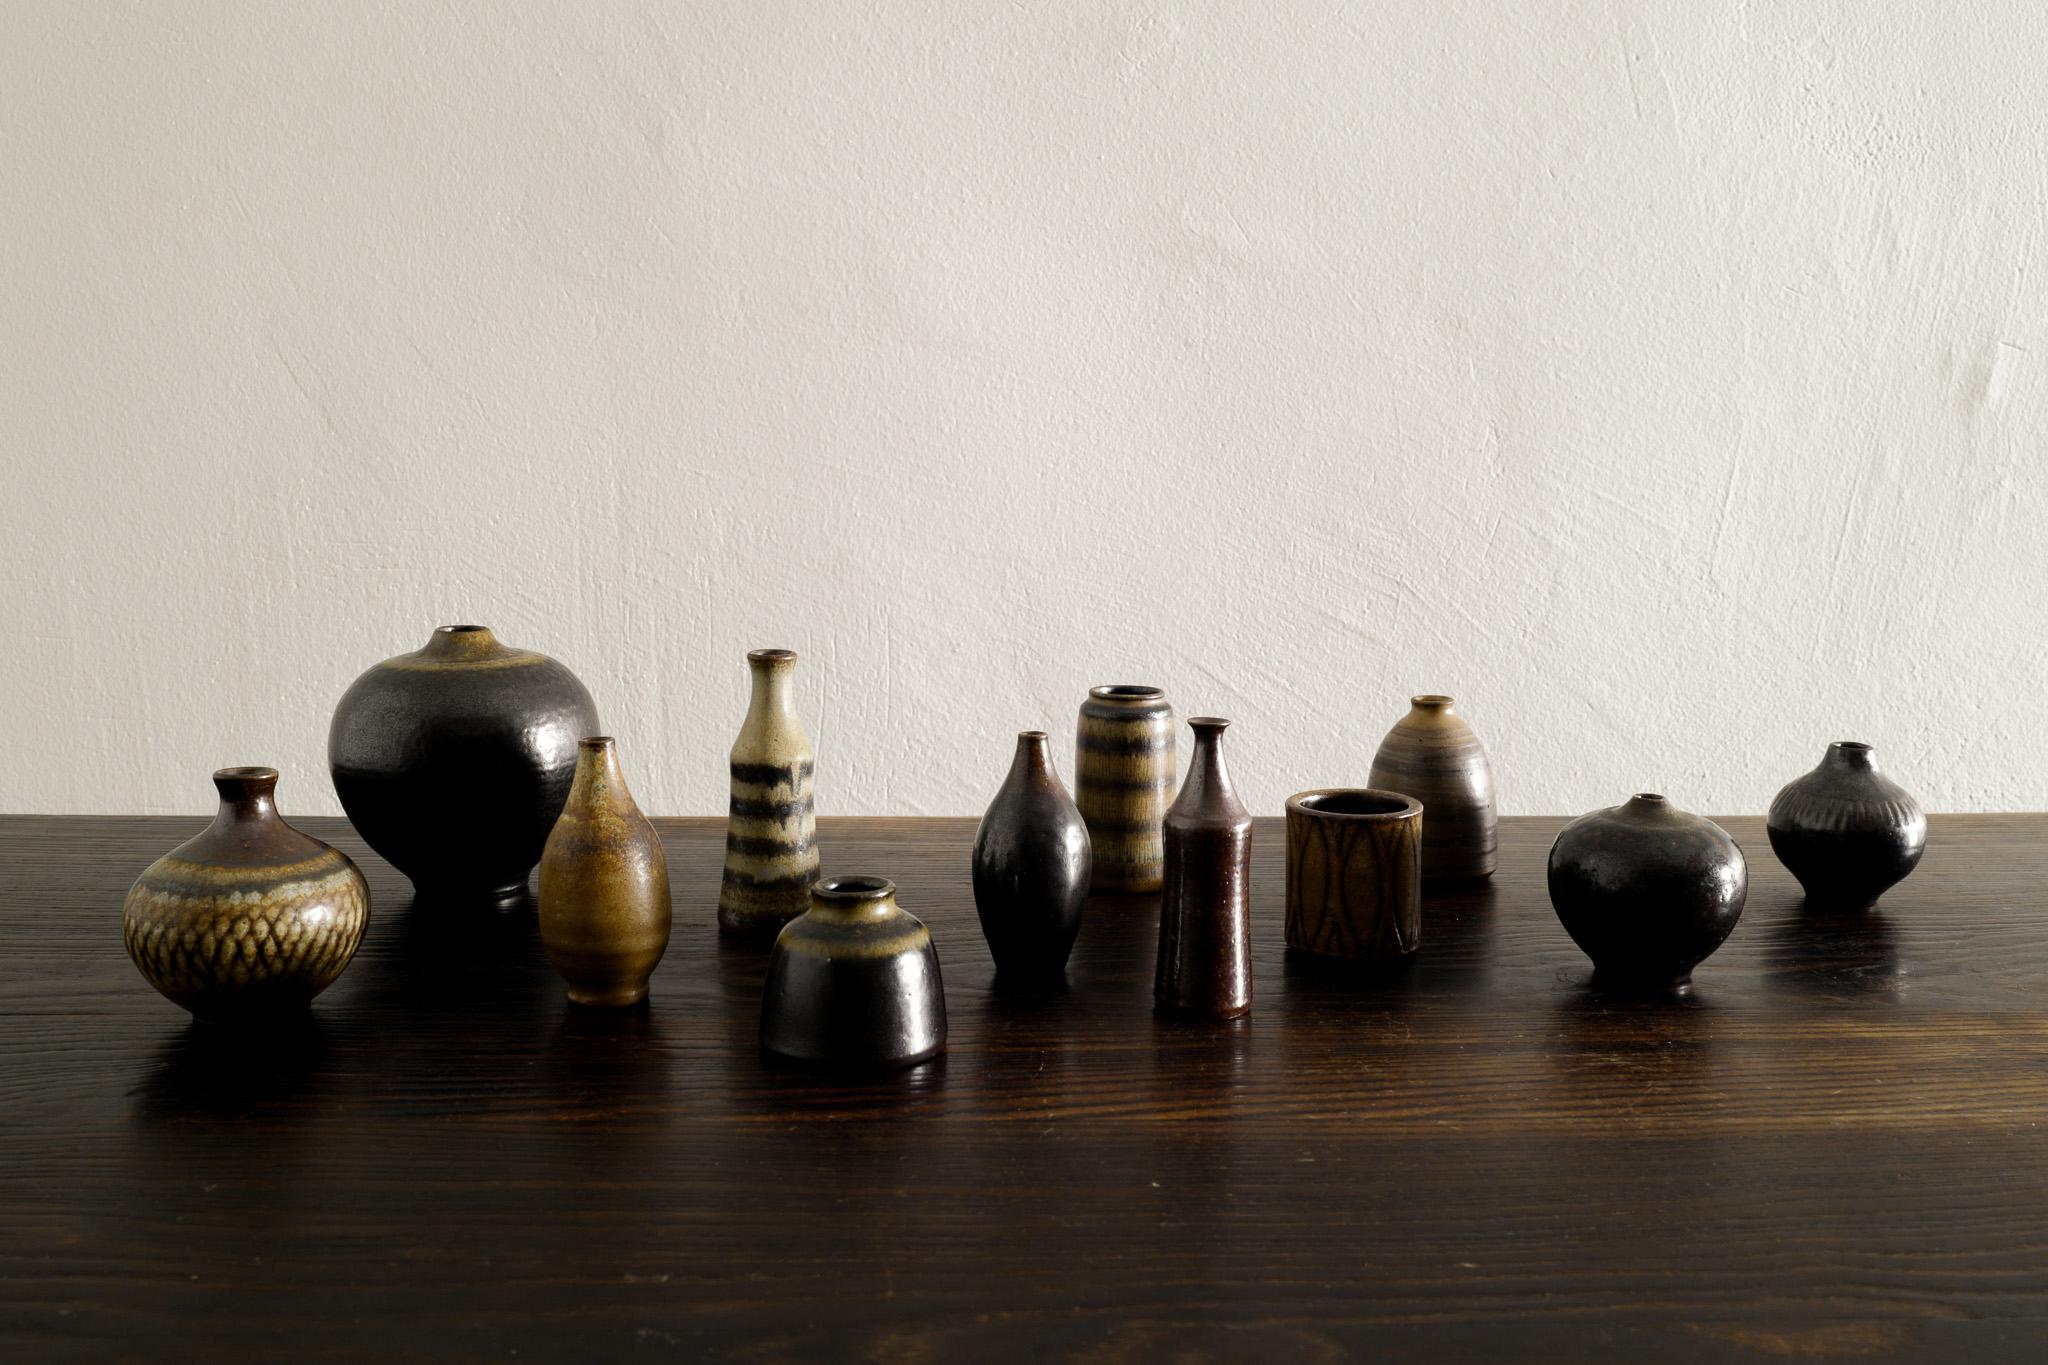 Rare série de 12 vases miniatures en grès émaillé du milieu du siècle, probablement conçus par Arthur Andersson et produits par Wallåkra, en Suède, dans les années 1940. 
En très bon état vintage et original, tous signés. 

Dimensions : H : 4,5-9,5